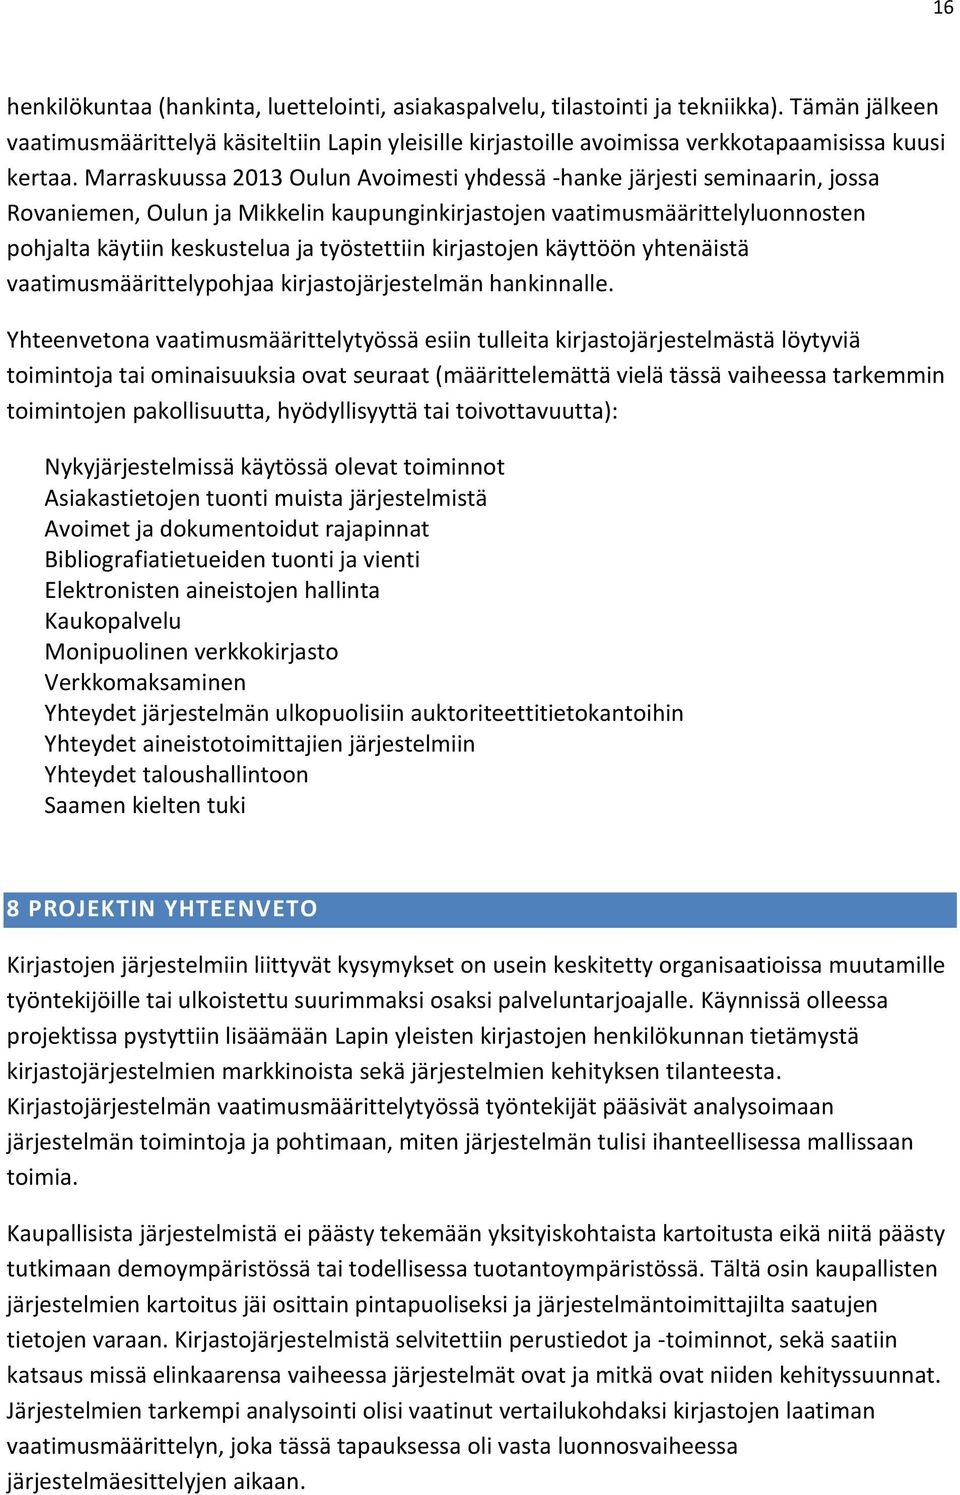 Marraskuussa 2013 Oulun Avoimesti yhdessä -hanke järjesti seminaarin, jossa Rovaniemen, Oulun ja Mikkelin kaupunginkirjastojen vaatimusmäärittelyluonnosten pohjalta käytiin keskustelua ja työstettiin